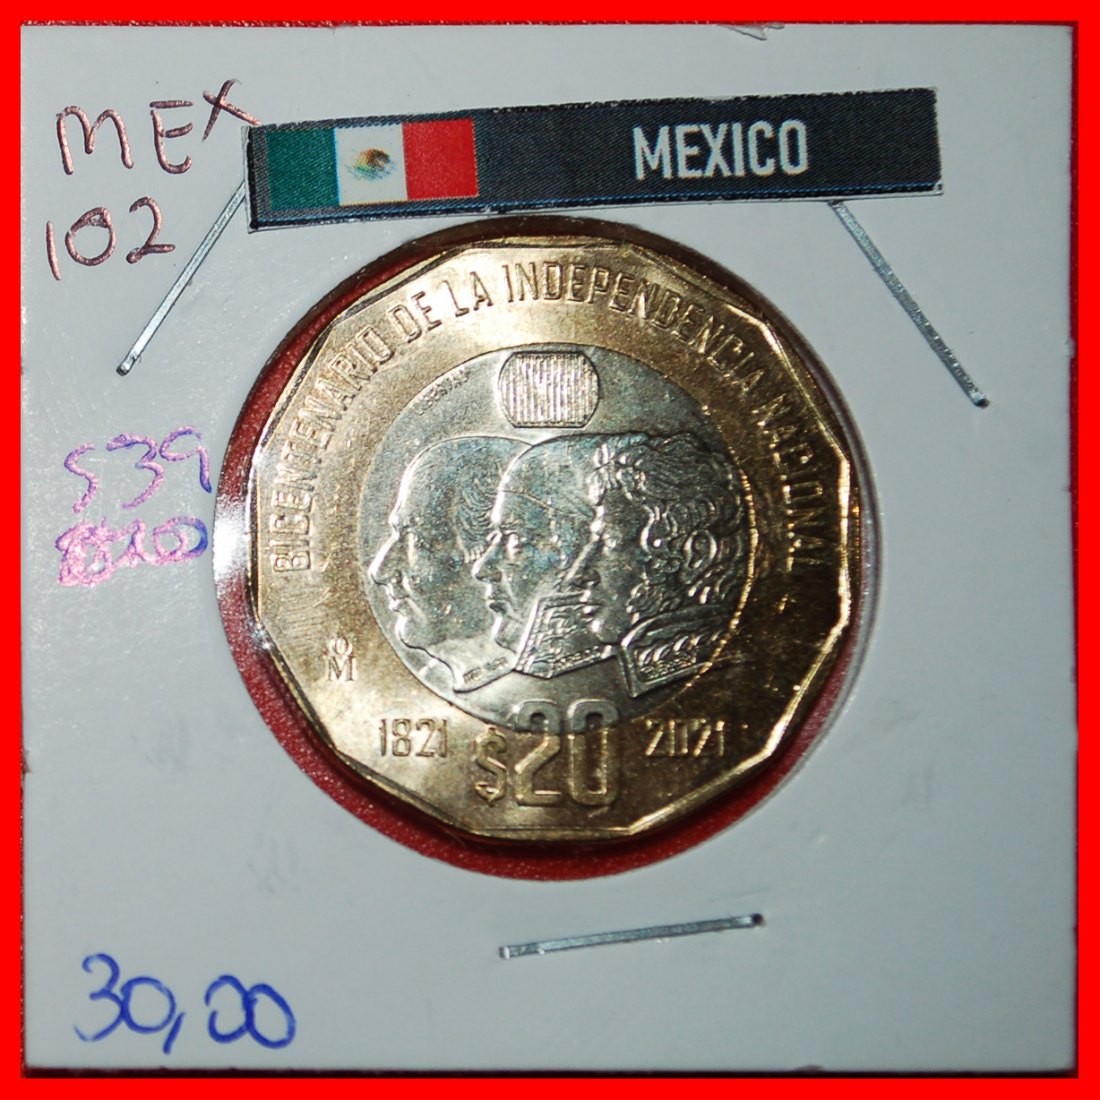  * FREIHEIT: MEXIKO ★ 20 PESO 1821-2021! STG STEMPELGLANZ BIMETALLISCH! IN PACKUNG! ★OHNE VORBEHALT!   